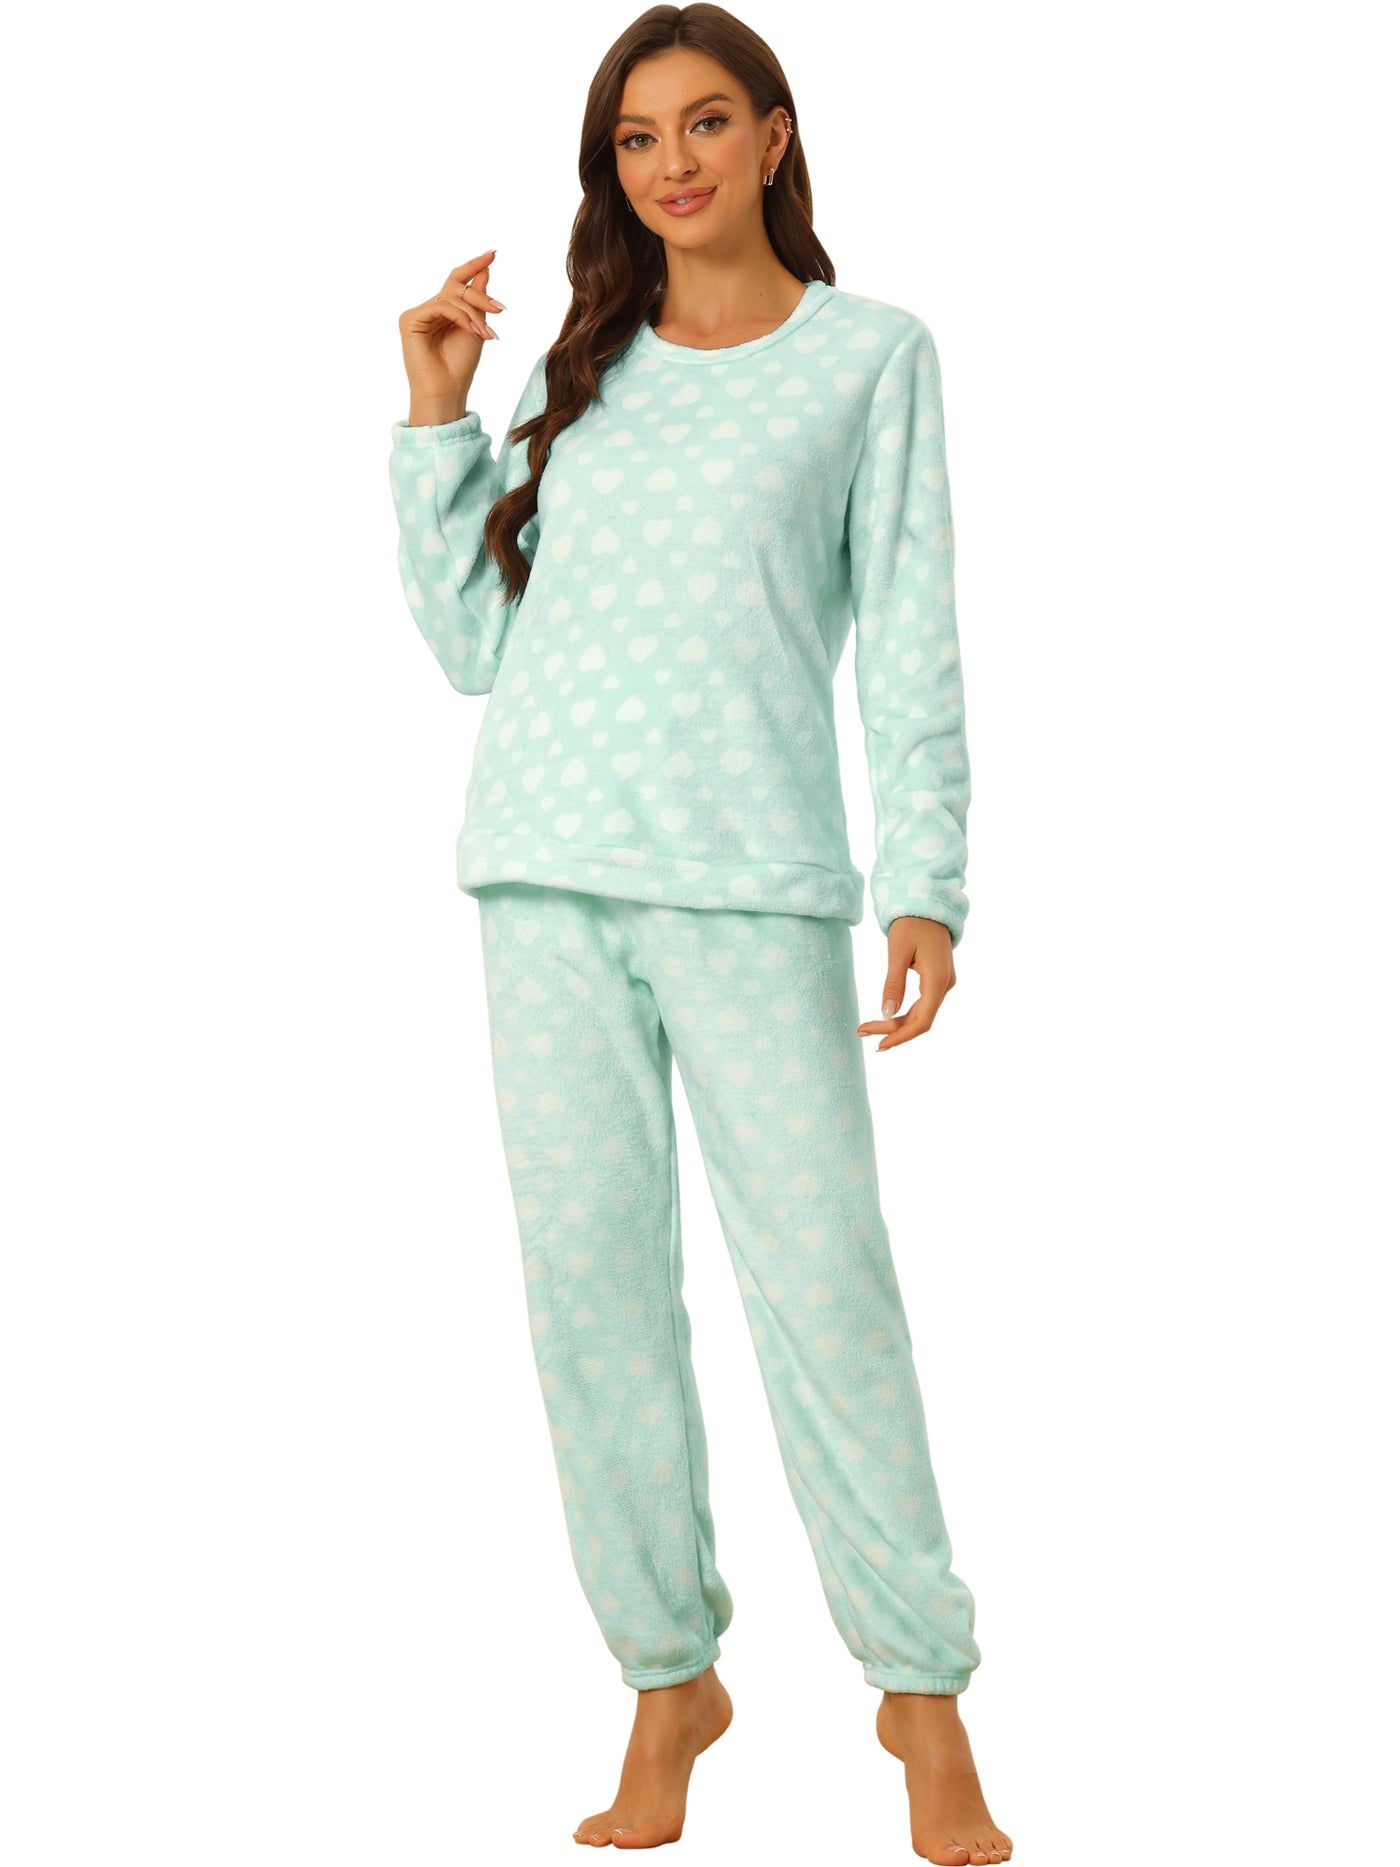 Allegra K Cute Printed Long Sleeve Nightwear Flannel Pajama Sets Sleepwears